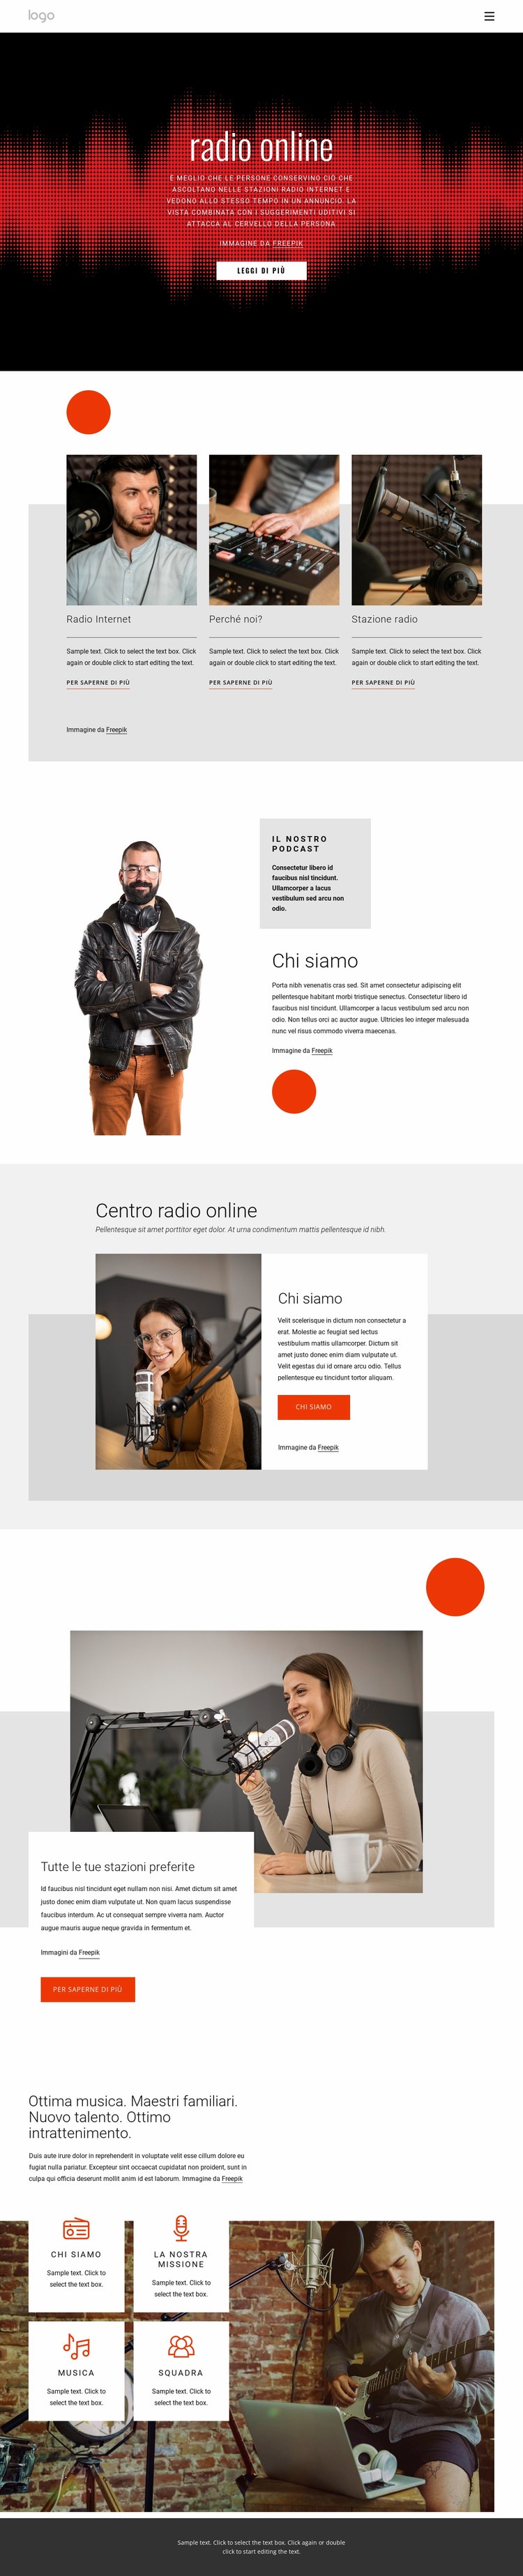 Programmi radiofonici in linea Progettazione di siti web